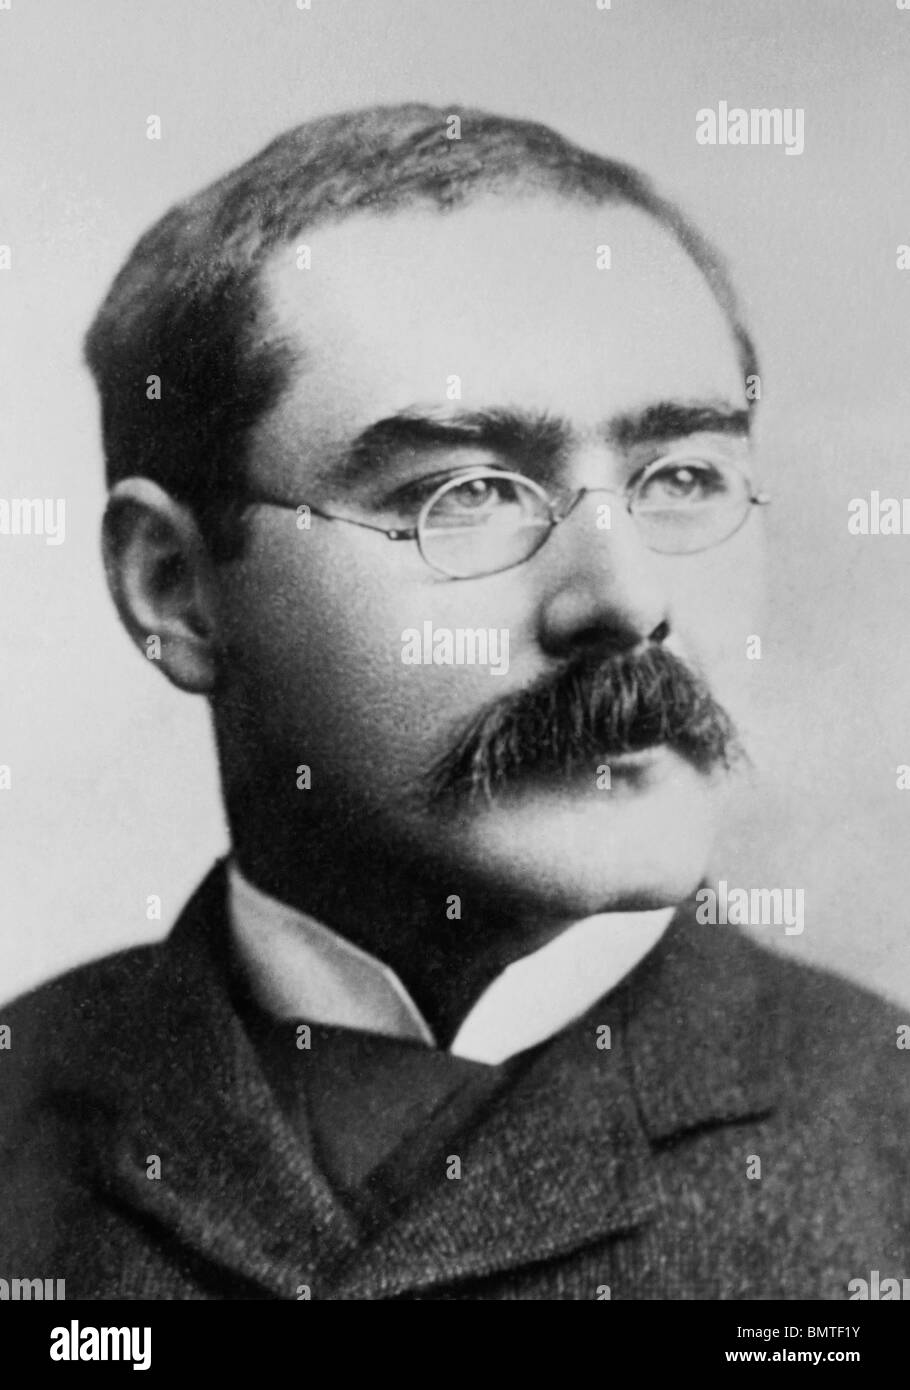 Non datato foto ritratto autore britannico + poeta Rudyard Kipling (1865 - 1936) - Il vincitore del Premio Nobel per la letteratura nel 1907. Foto Stock